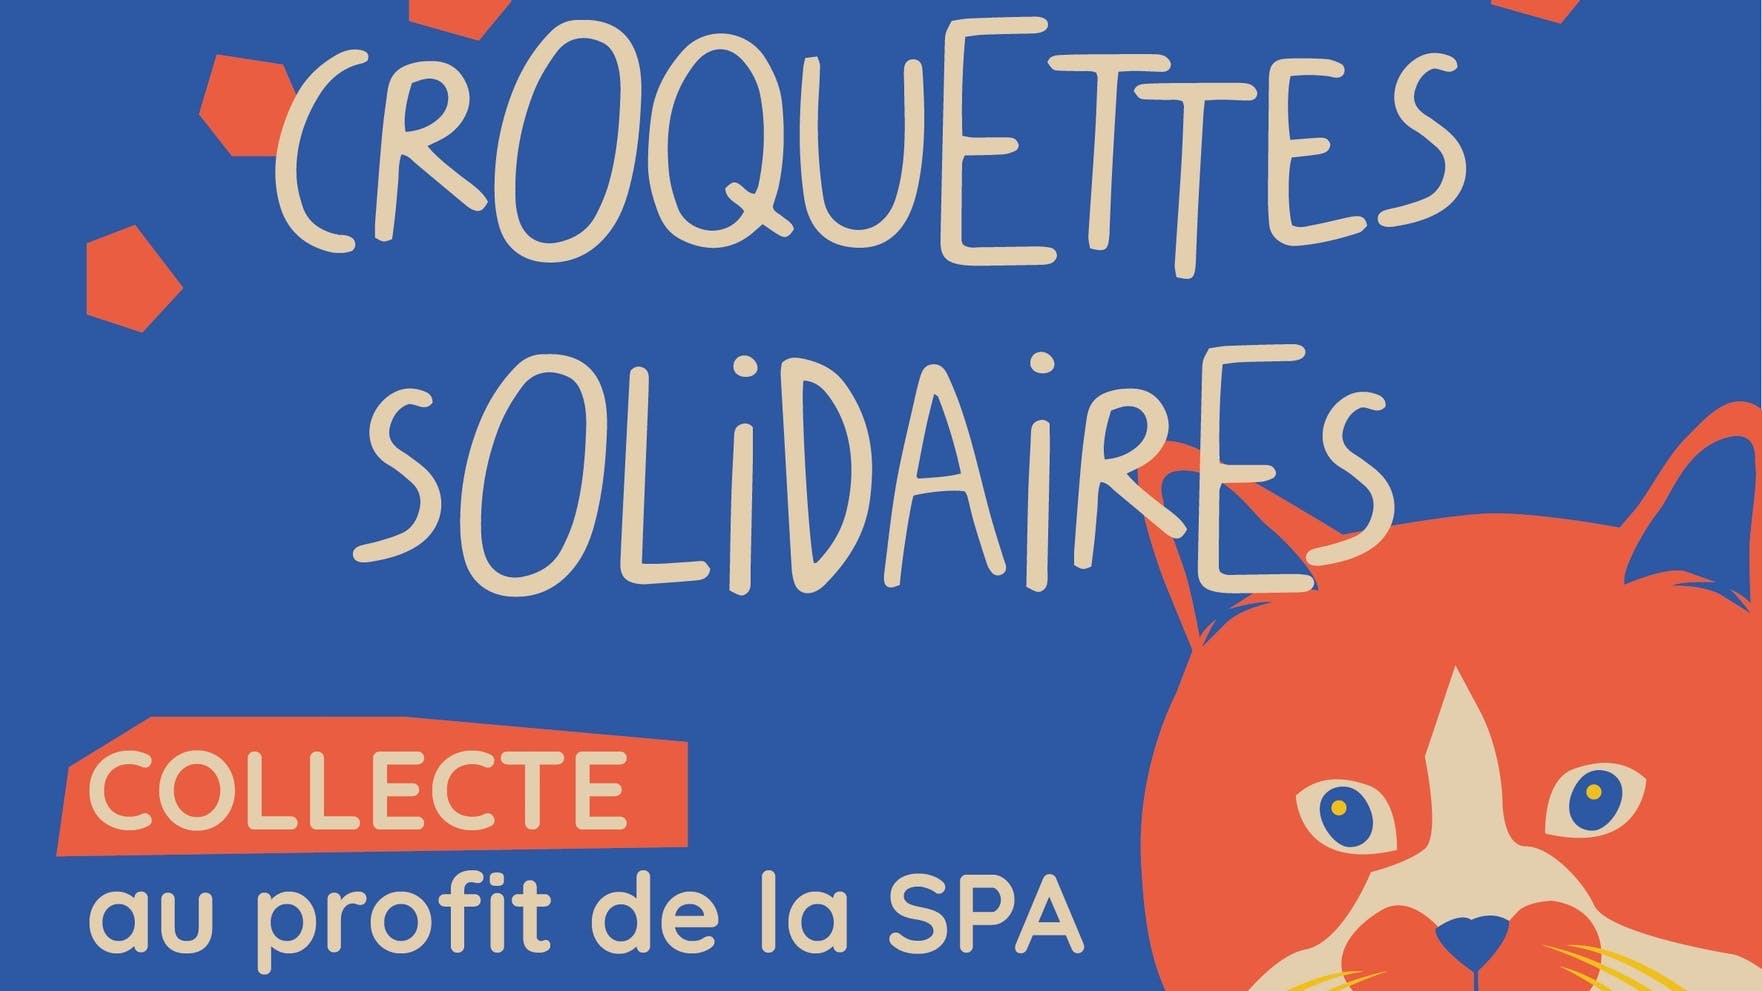 Croquettes Solidaires - Collecte de dons